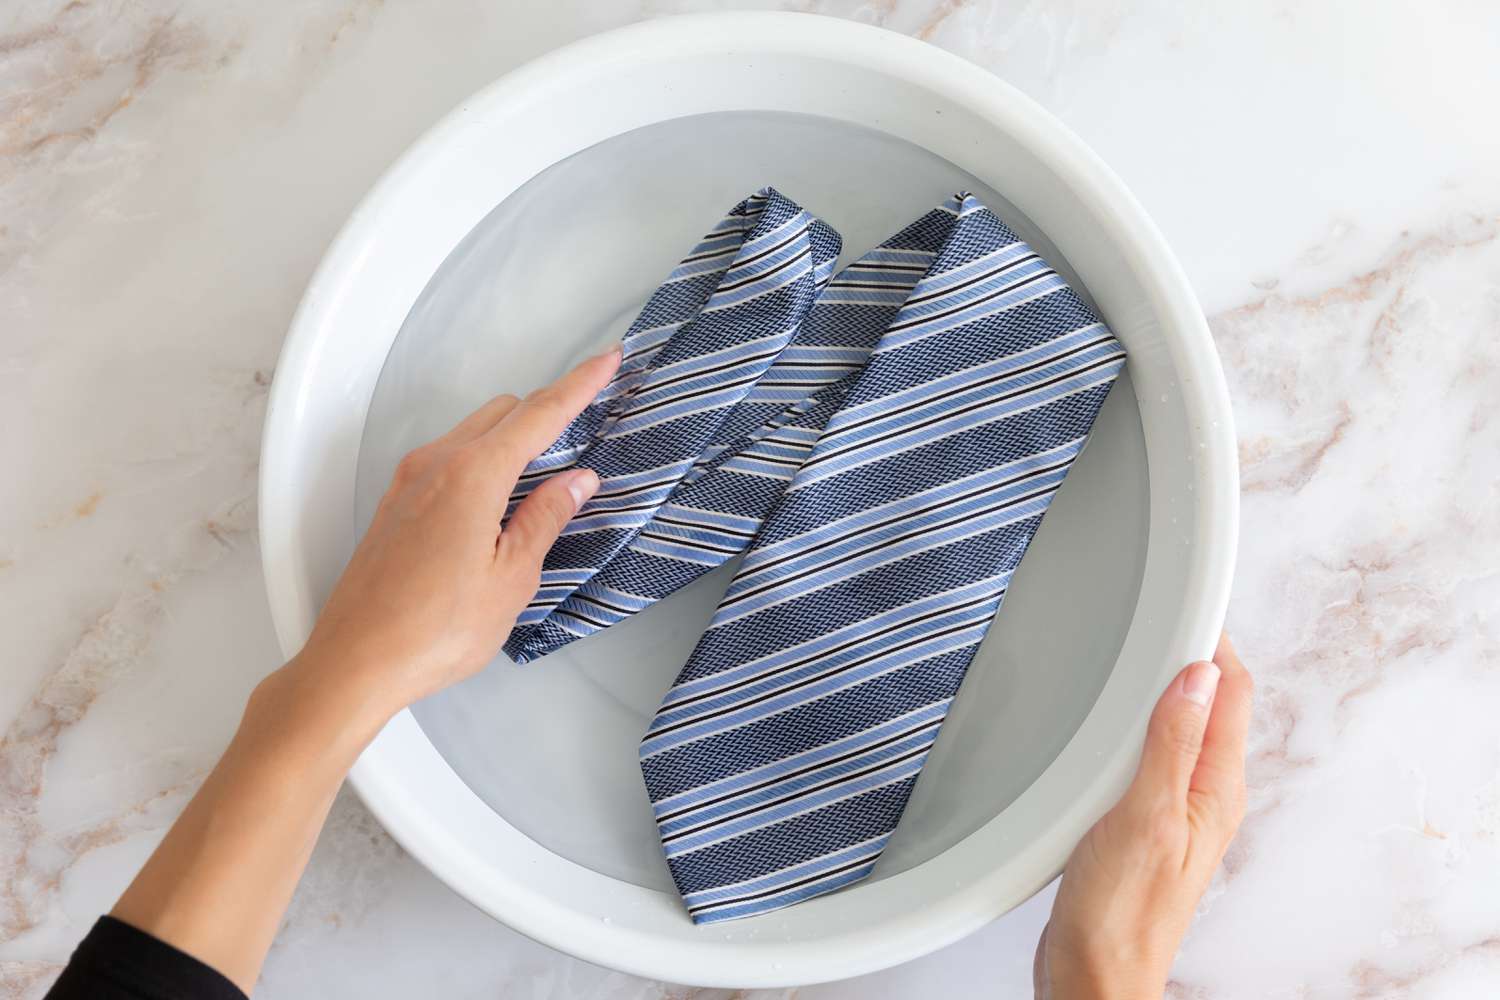 Blau gestreifte Krawatte, handgewaschen in weißer Schüssel mit Wasser und Vorbehandlungsmittel